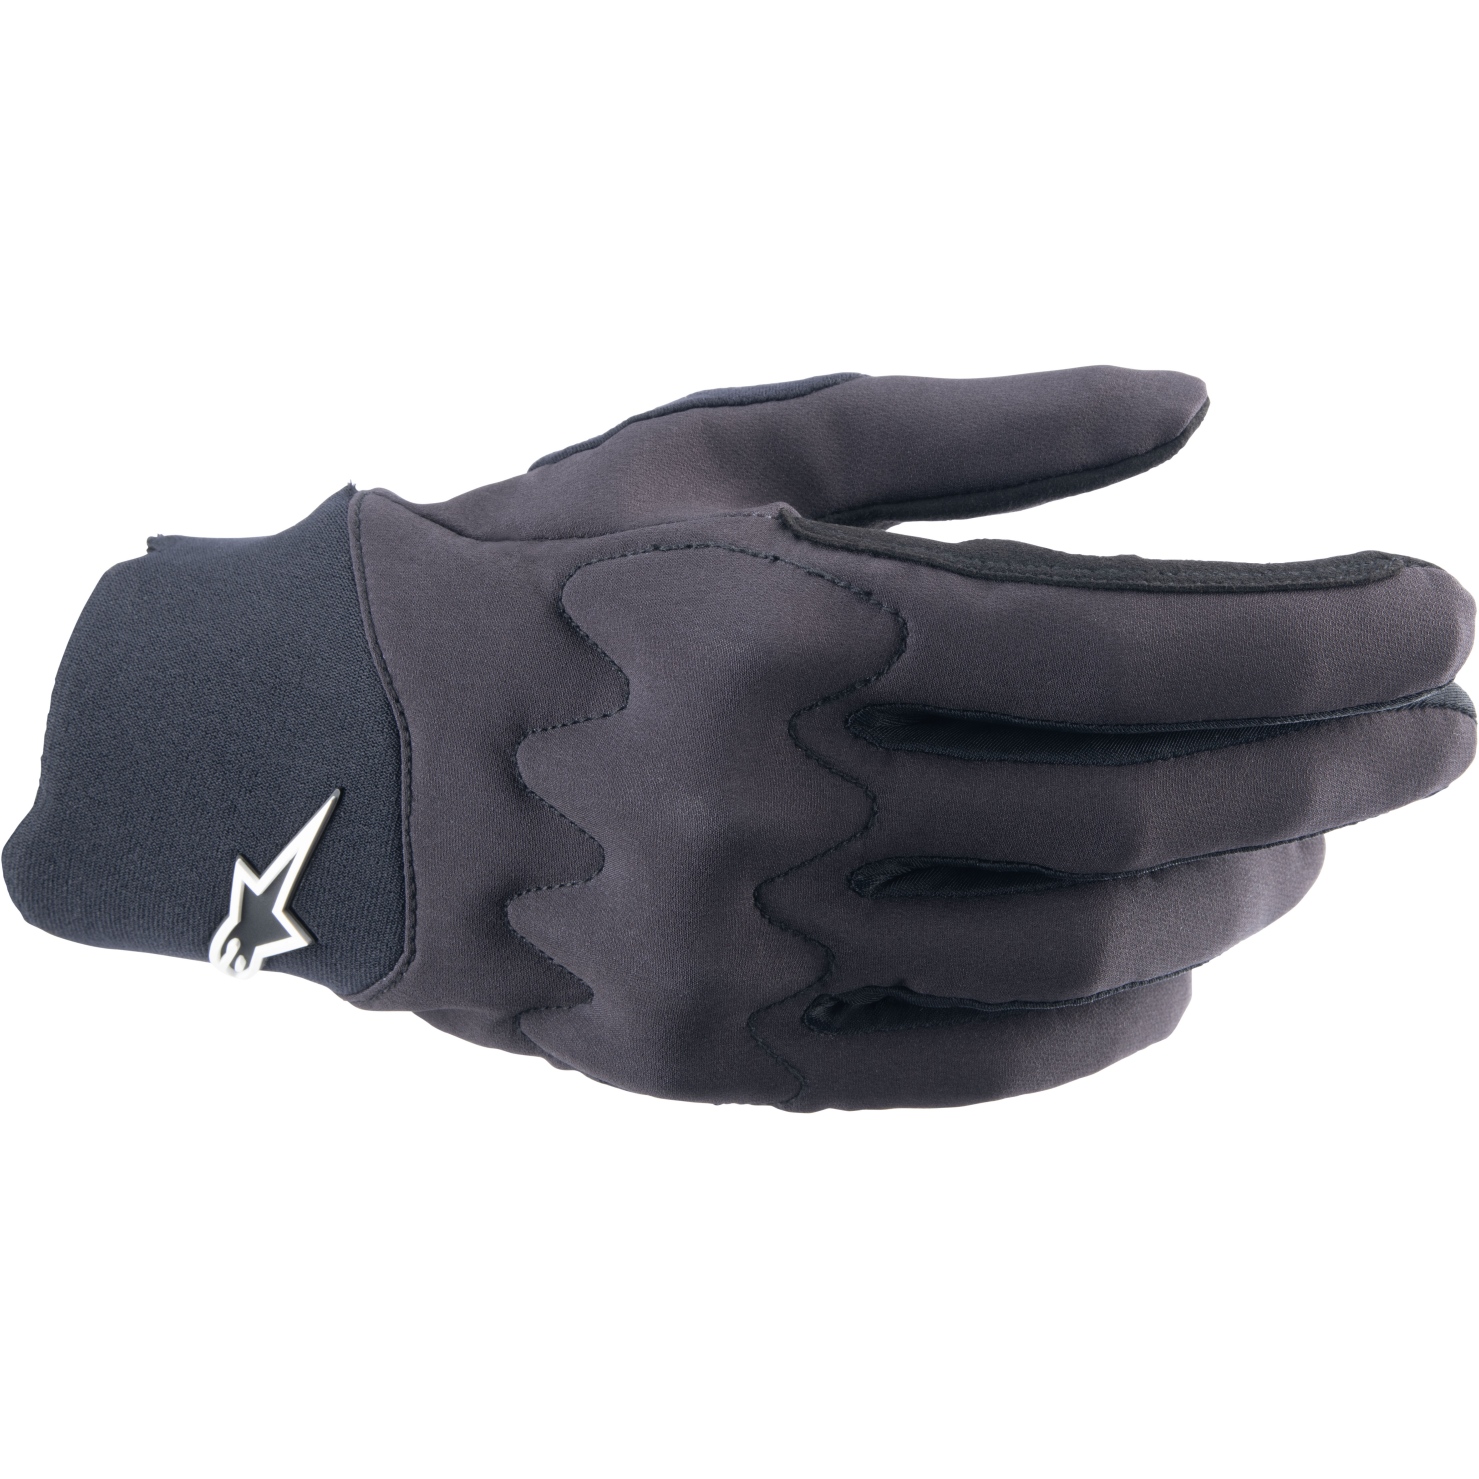 Productfoto van Alpinestars A-Supra Shield Handschoenen - zwart